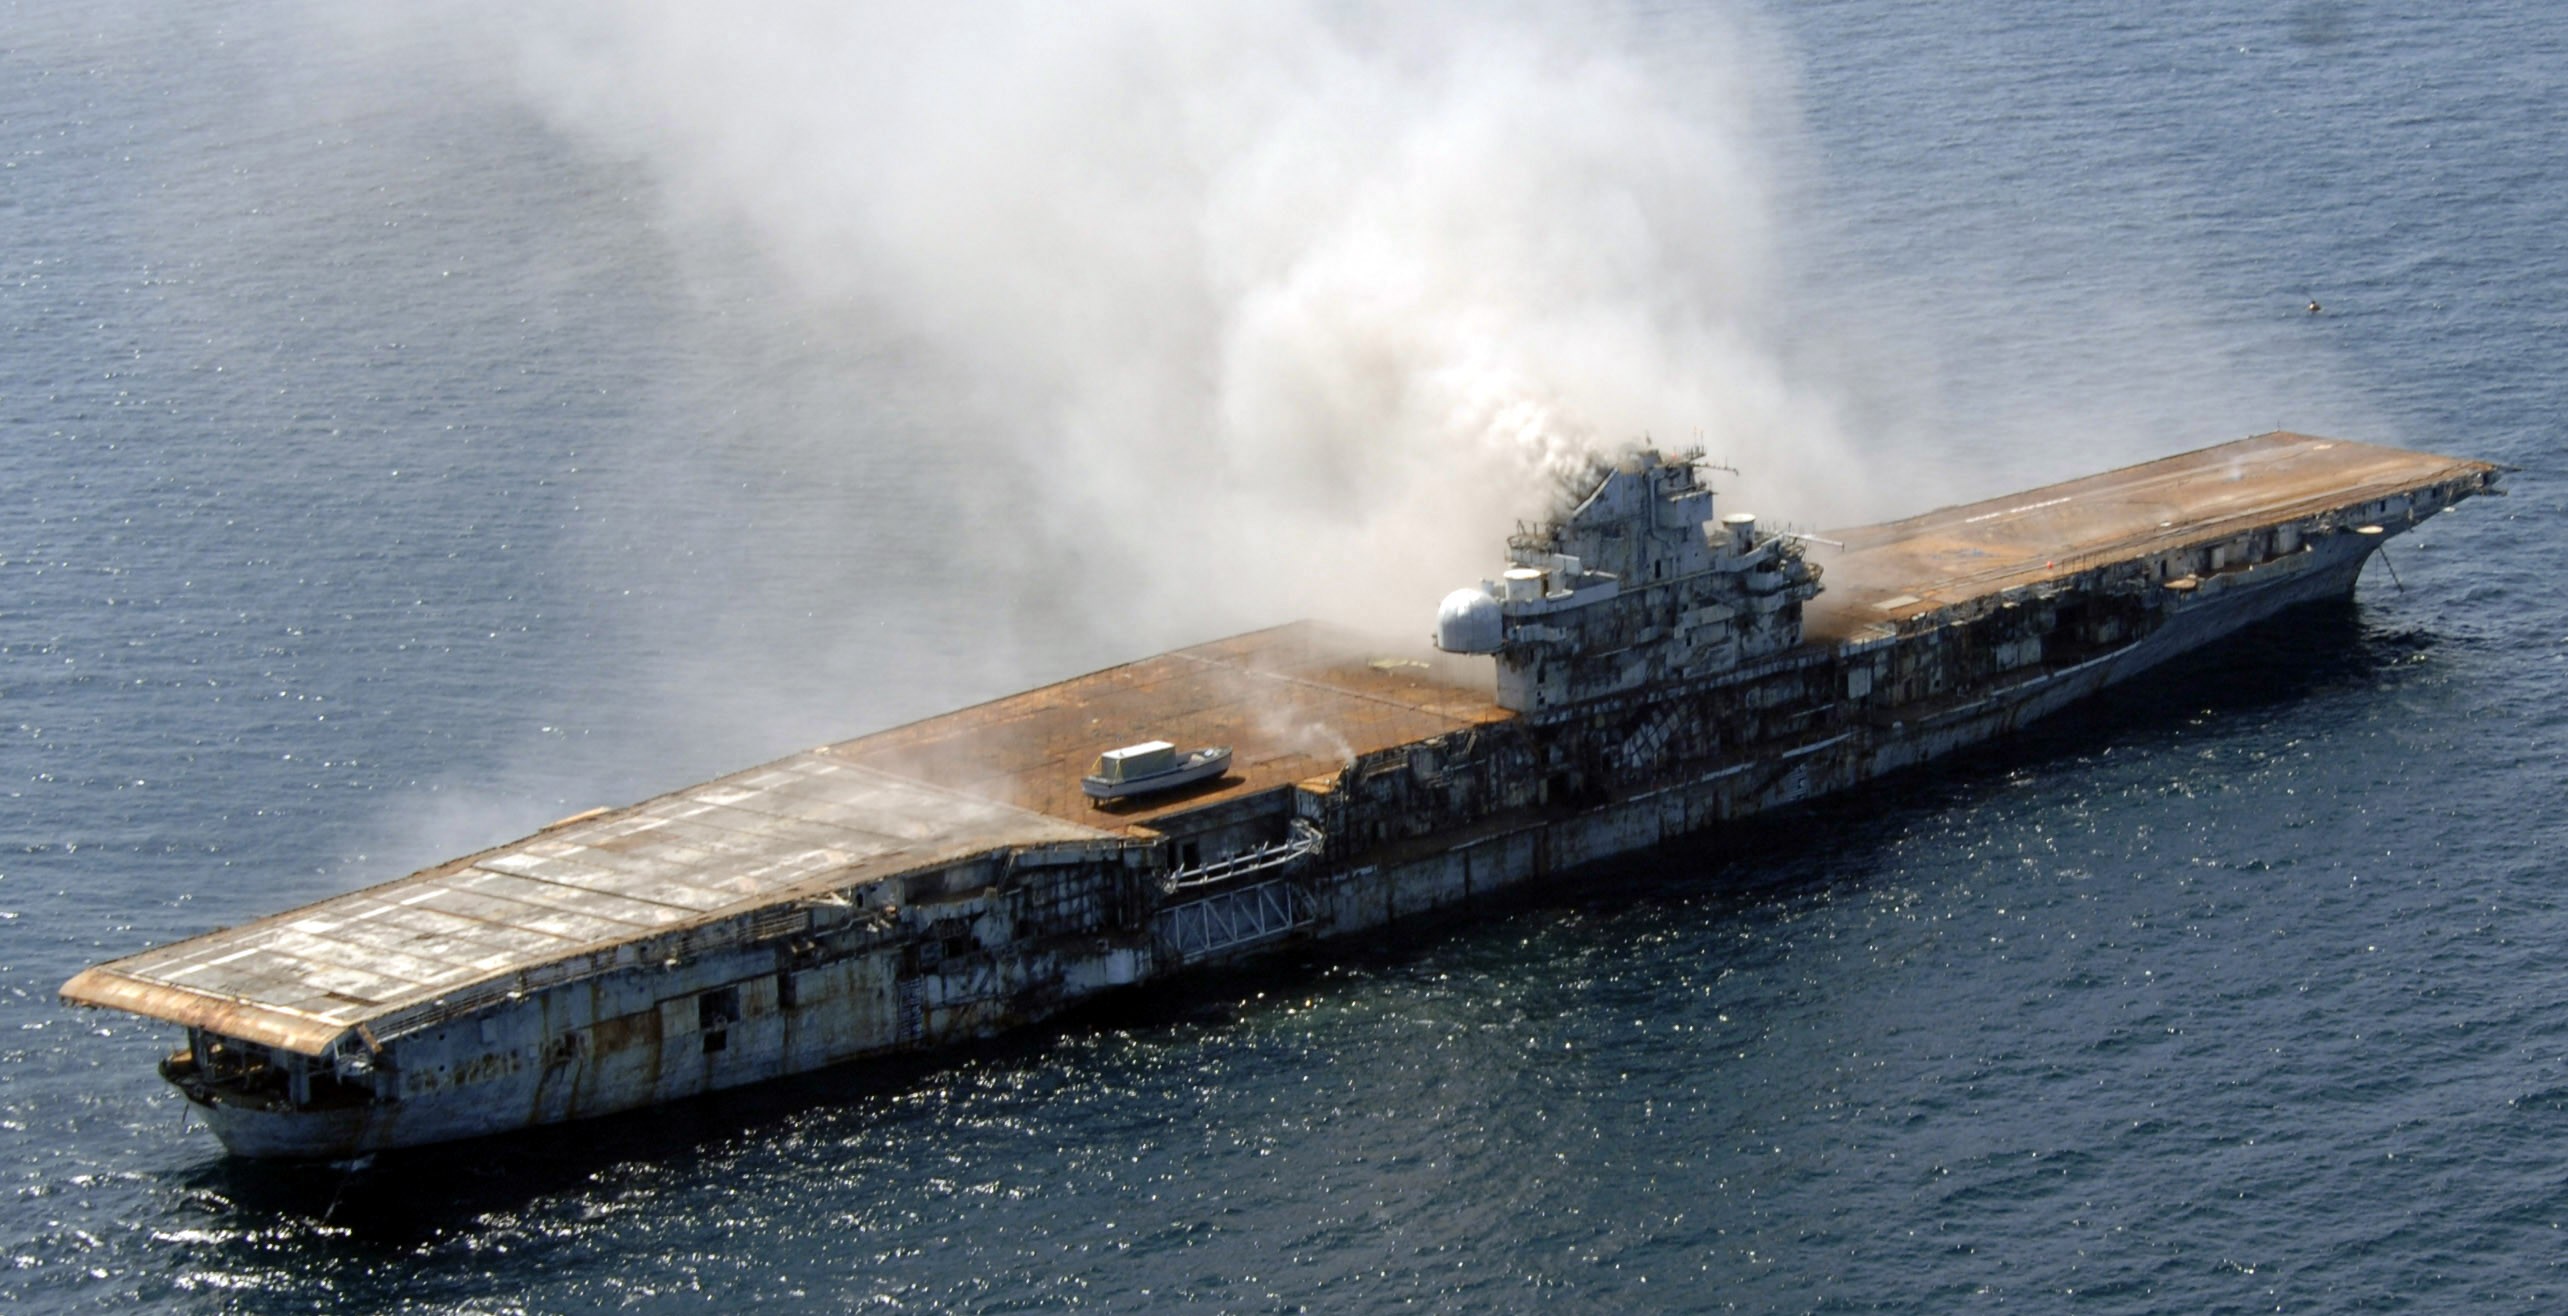 cv-34 uss oriskany essex class aircraft carrier us navy sinking artificial reef off florida 107